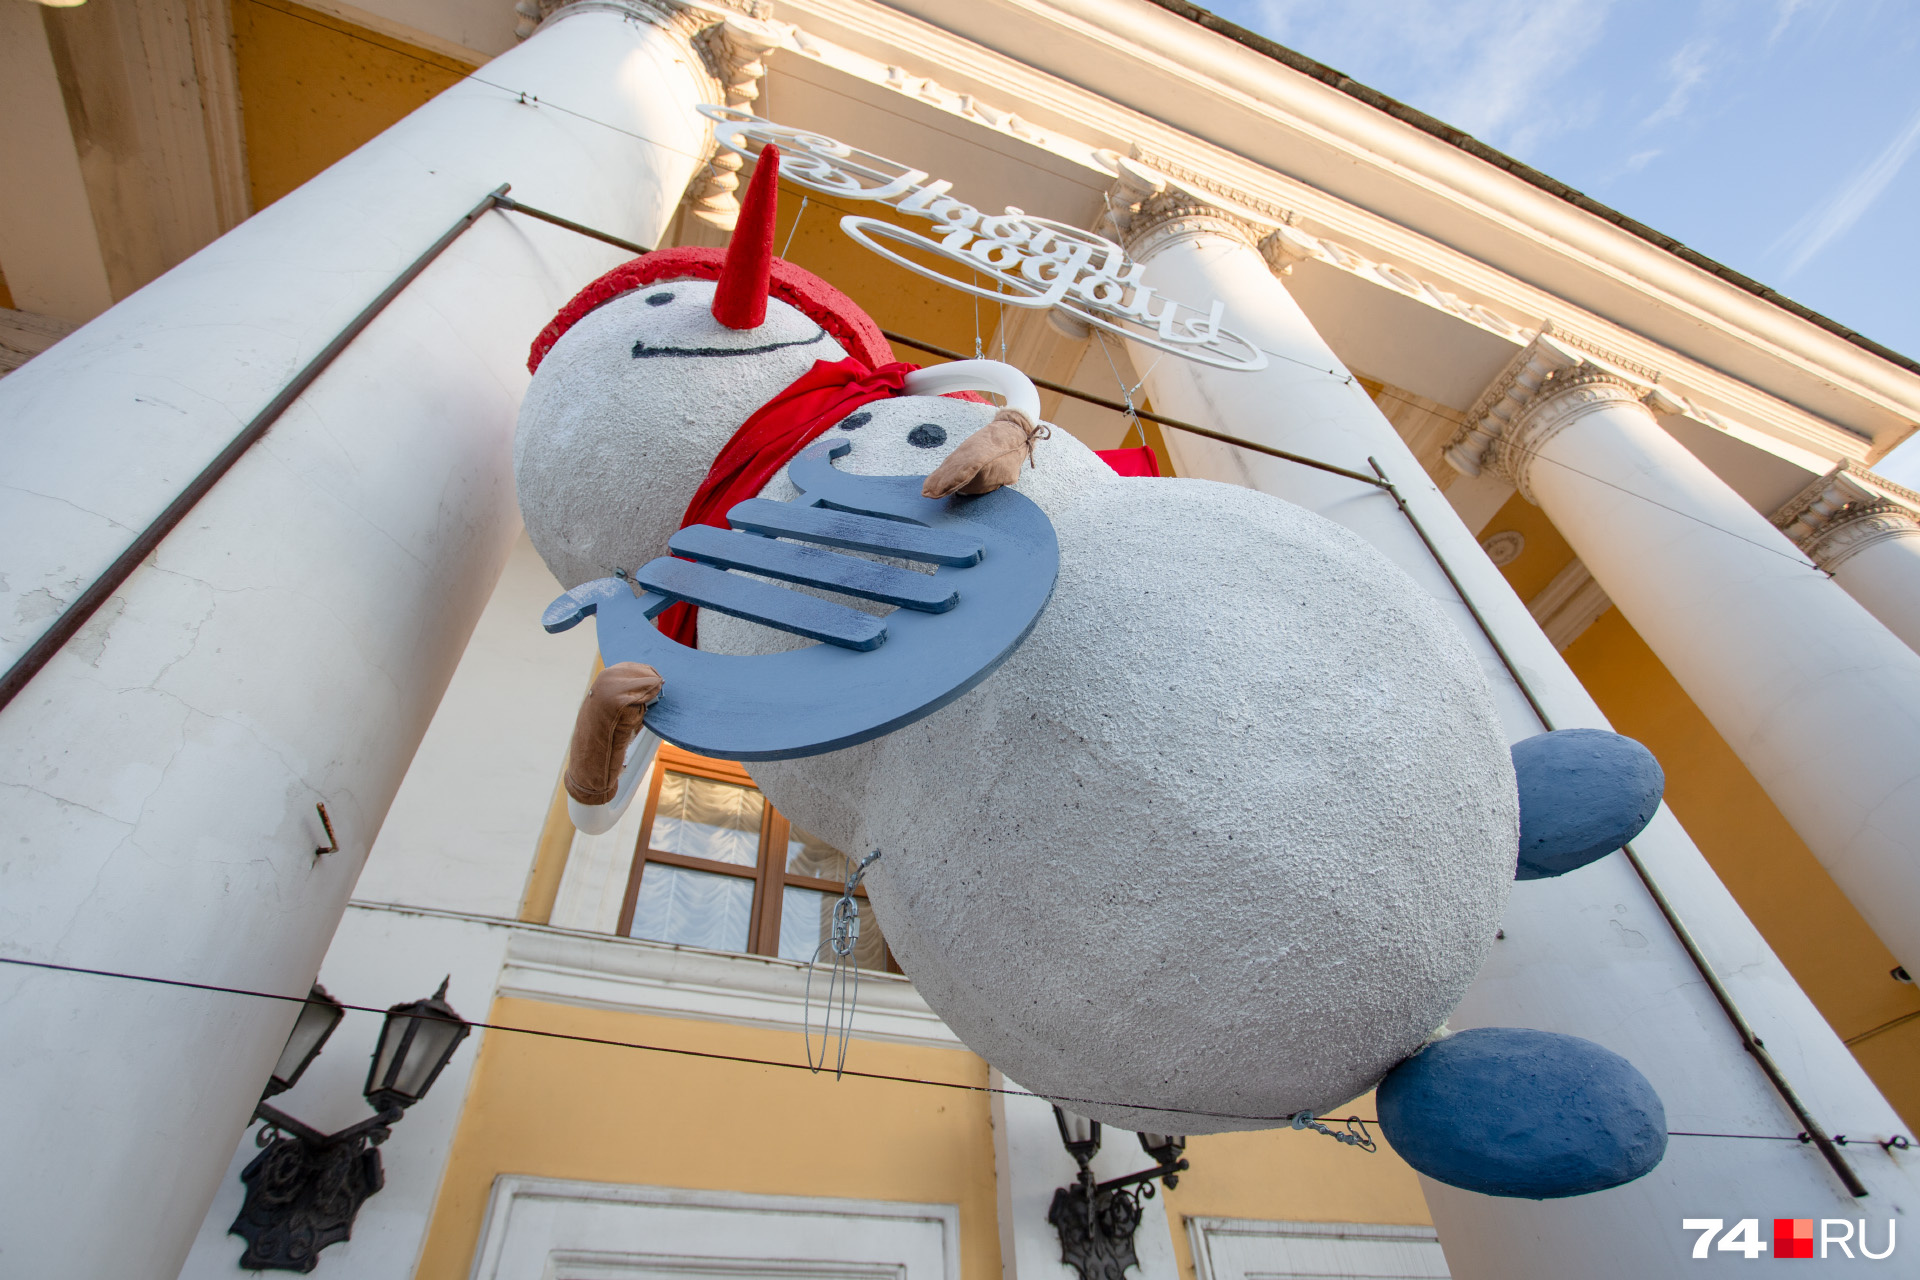 А этот забавный снеговик встречает посетителей филармонии